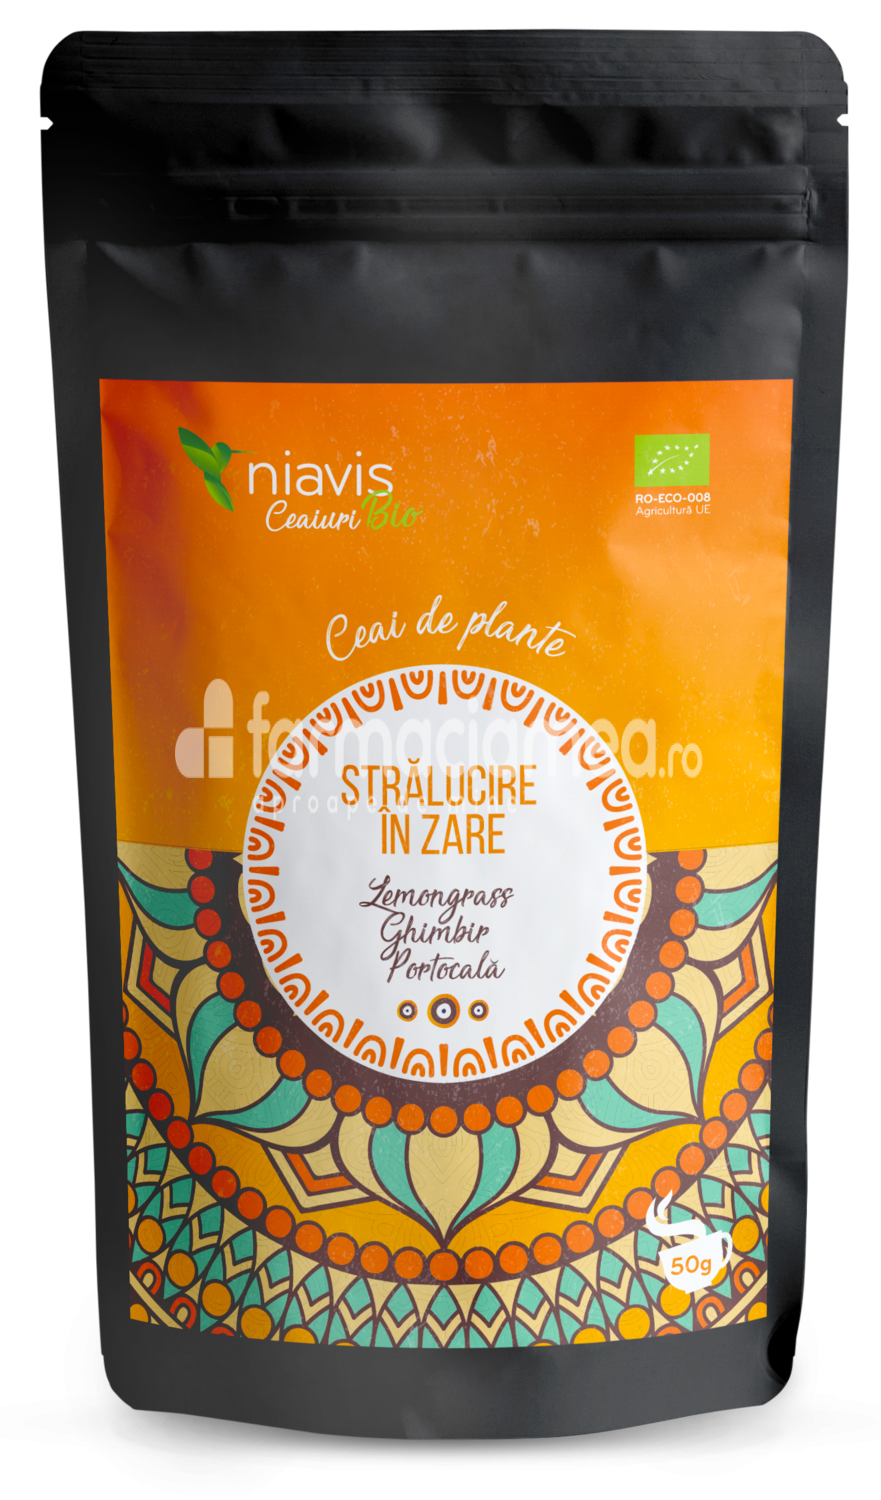 Ceaiuri - Niavis Ceai ecologic Bio "Stralucire in zare", aroma de lemongrass, ghimbir si portocala, 50 g, farmaciamea.ro